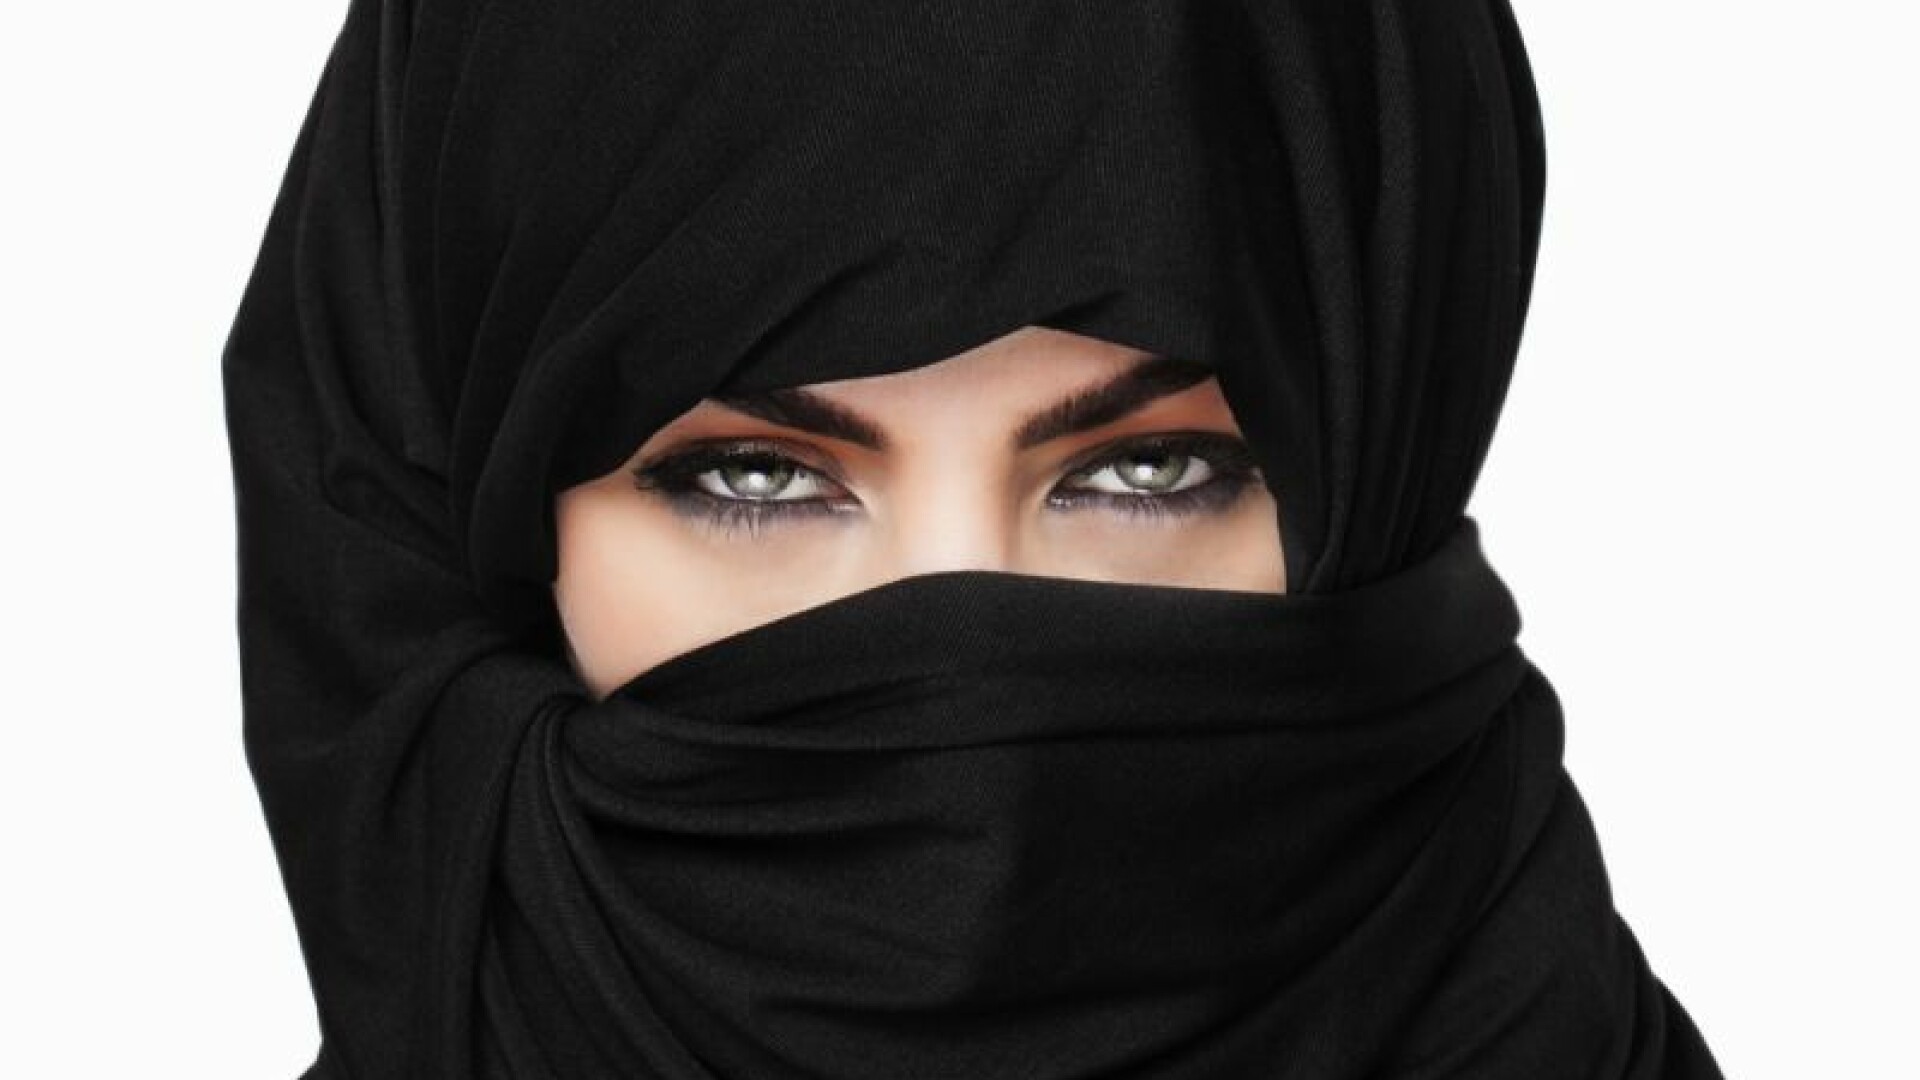 Femeie cu burka, islamism